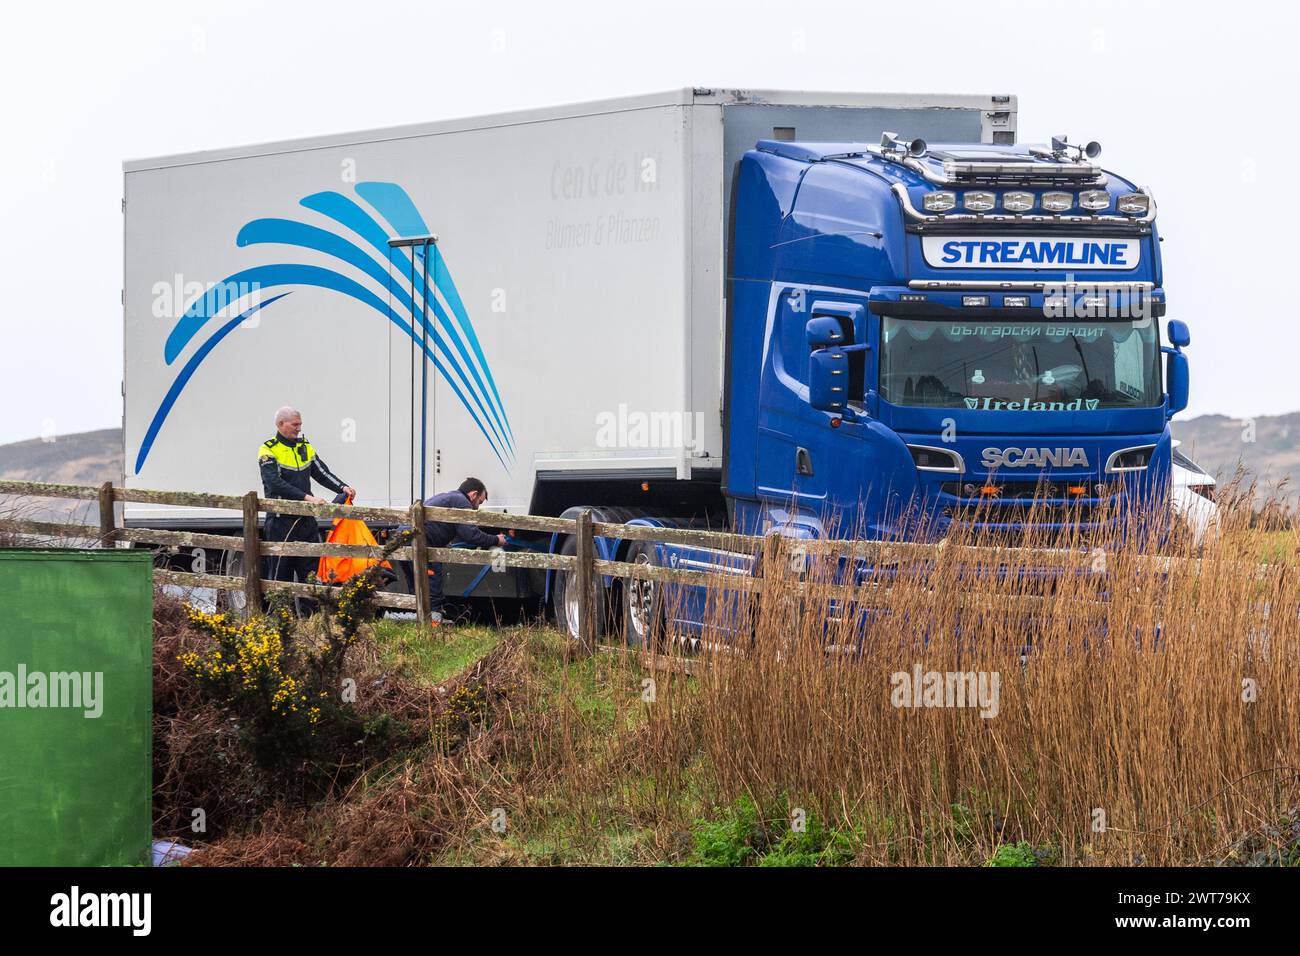 Beschlagnahmte ein Artic Truck in Tragumna, West Cork, Irland, als Teil einer Garda-Drogenoperation. Stockfoto